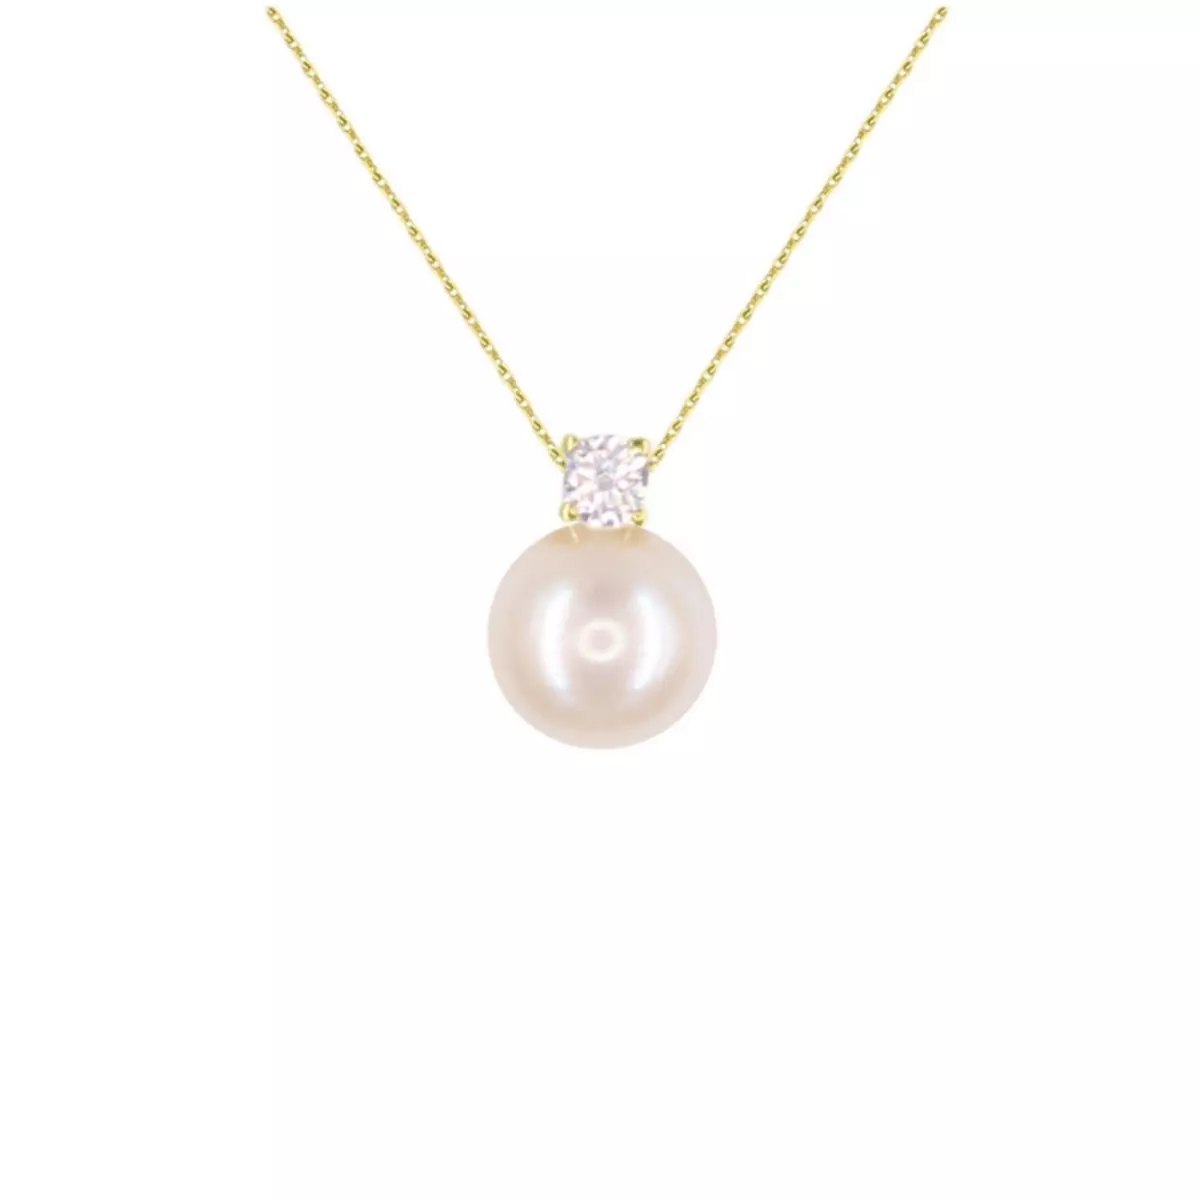 L'ATELIER D'AZUR Collier Femme Or Jaune Véritable - Pendentif Perle Orné d'un Zirconium